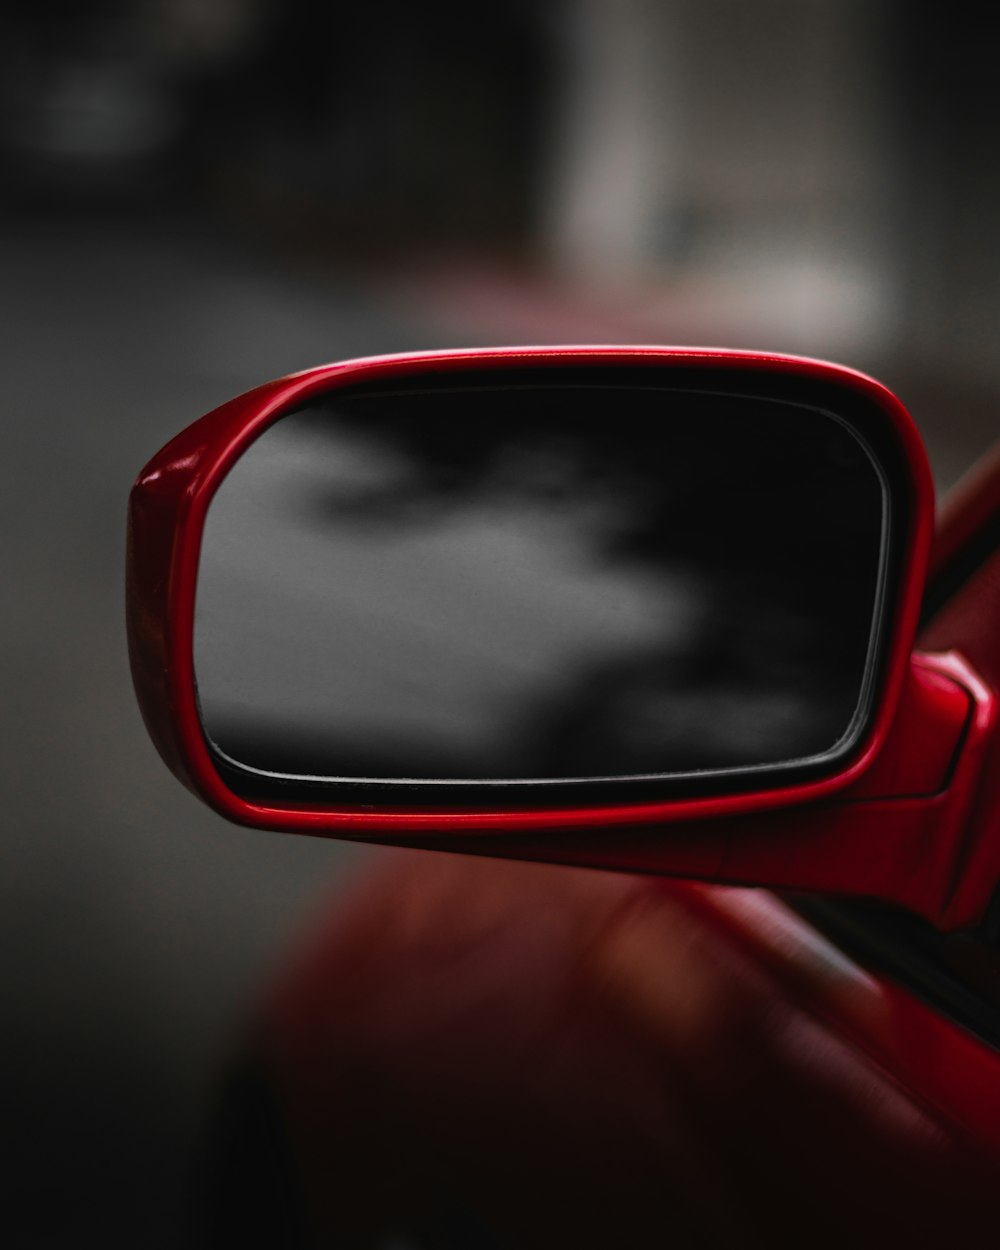 a red car mirror